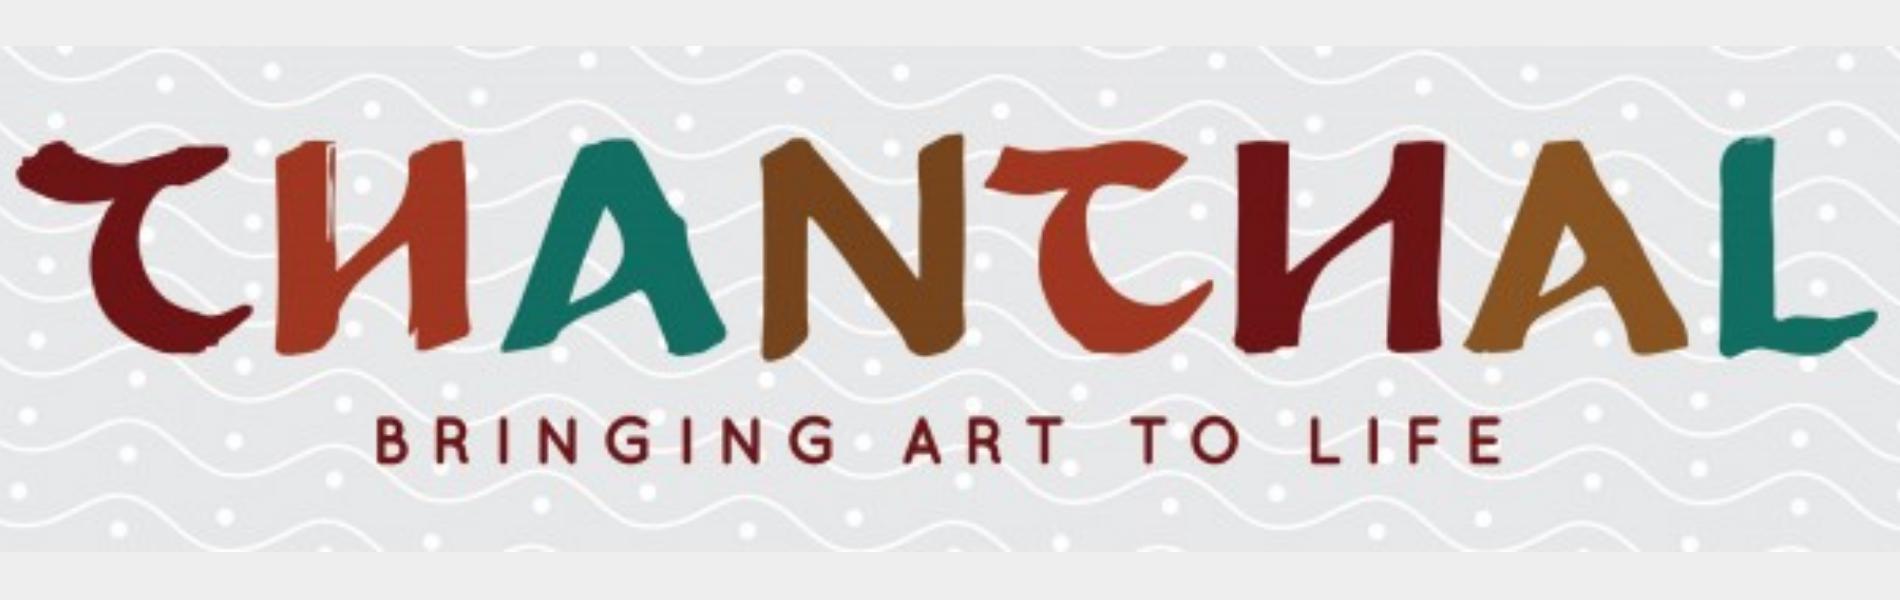 Chanchal - Bringing Art to Life